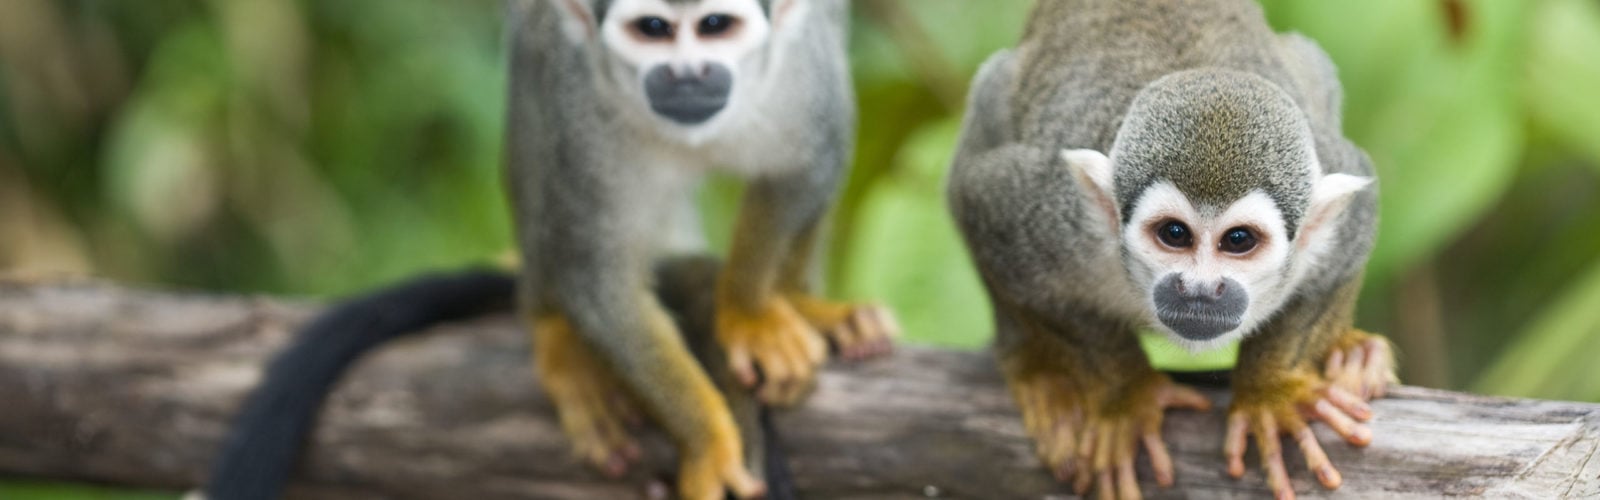 Squirrel Monkeys Amazon Ecuador